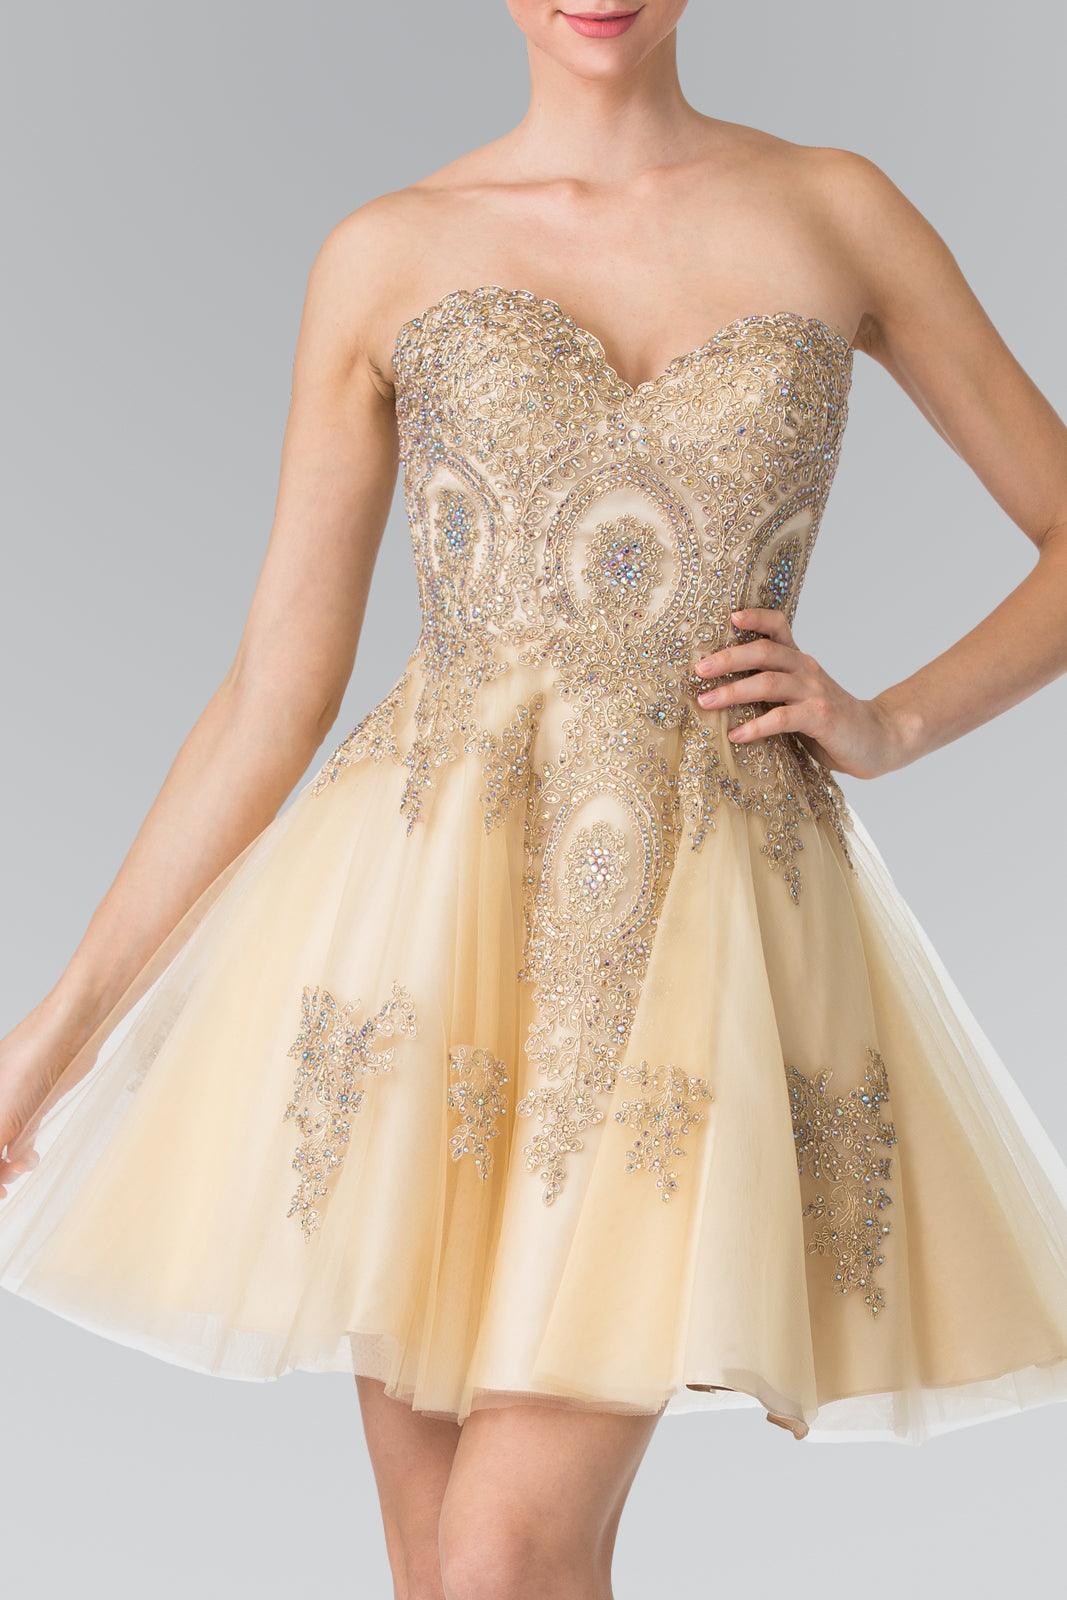 Prom Short Dress Homecoming - The Dress Outlet Elizabeth K